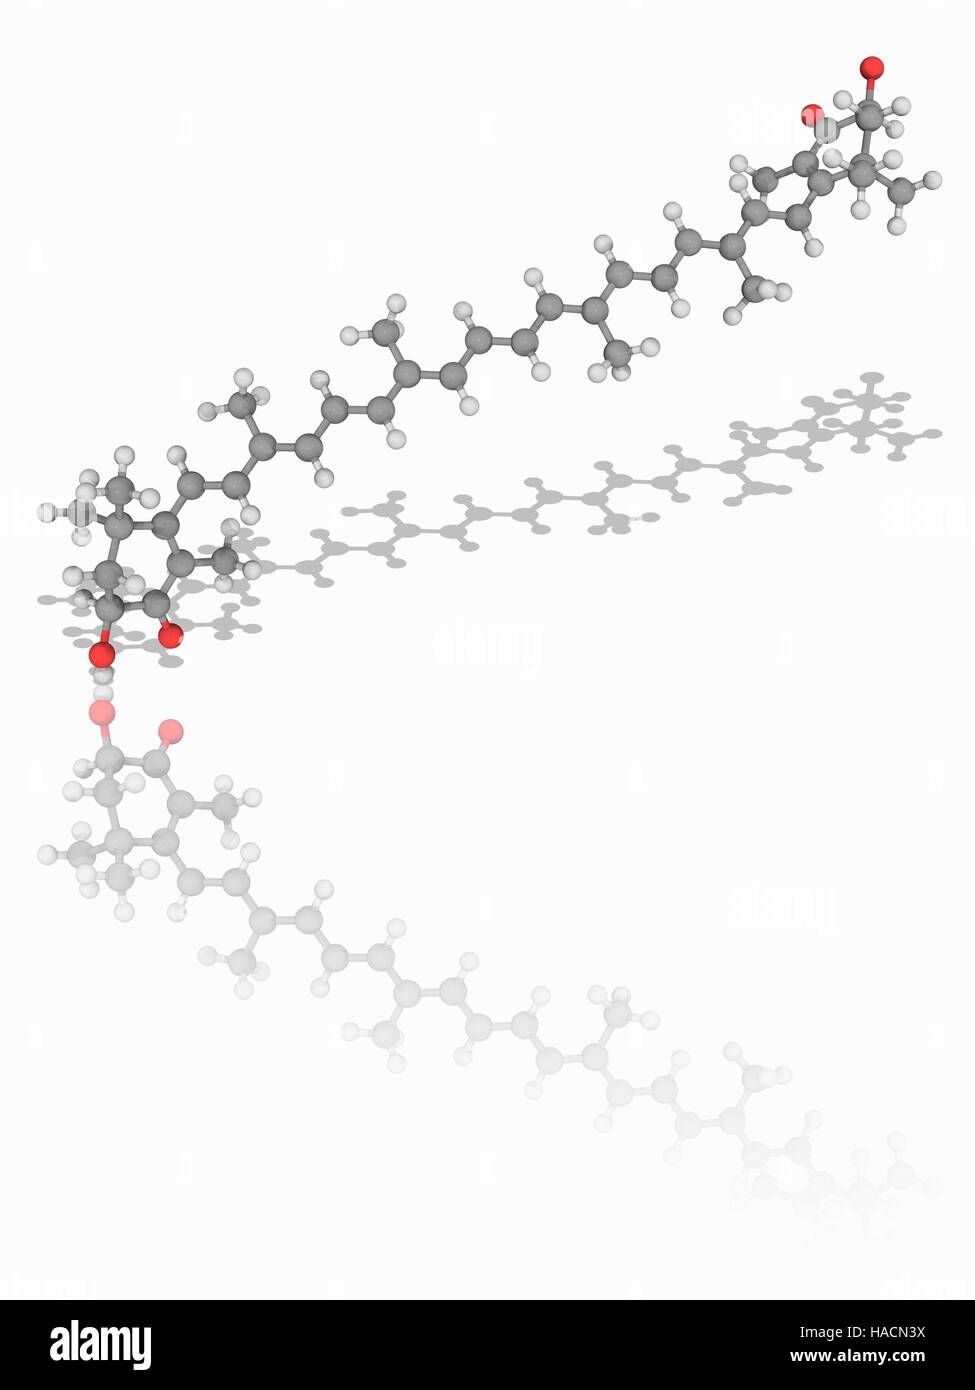 La astaxantina. Modelo molecular de la molécula ceto-carotenoide astaxantina (C40.H52.O4). Un componente nutricional natural, no se convierte en vitamina A en el cuerpo humano. Los átomos son representados como esferas y están codificados por color (gris): carbono, hidrógeno y oxígeno (blanco) (rojo). Ilustración. Foto de stock